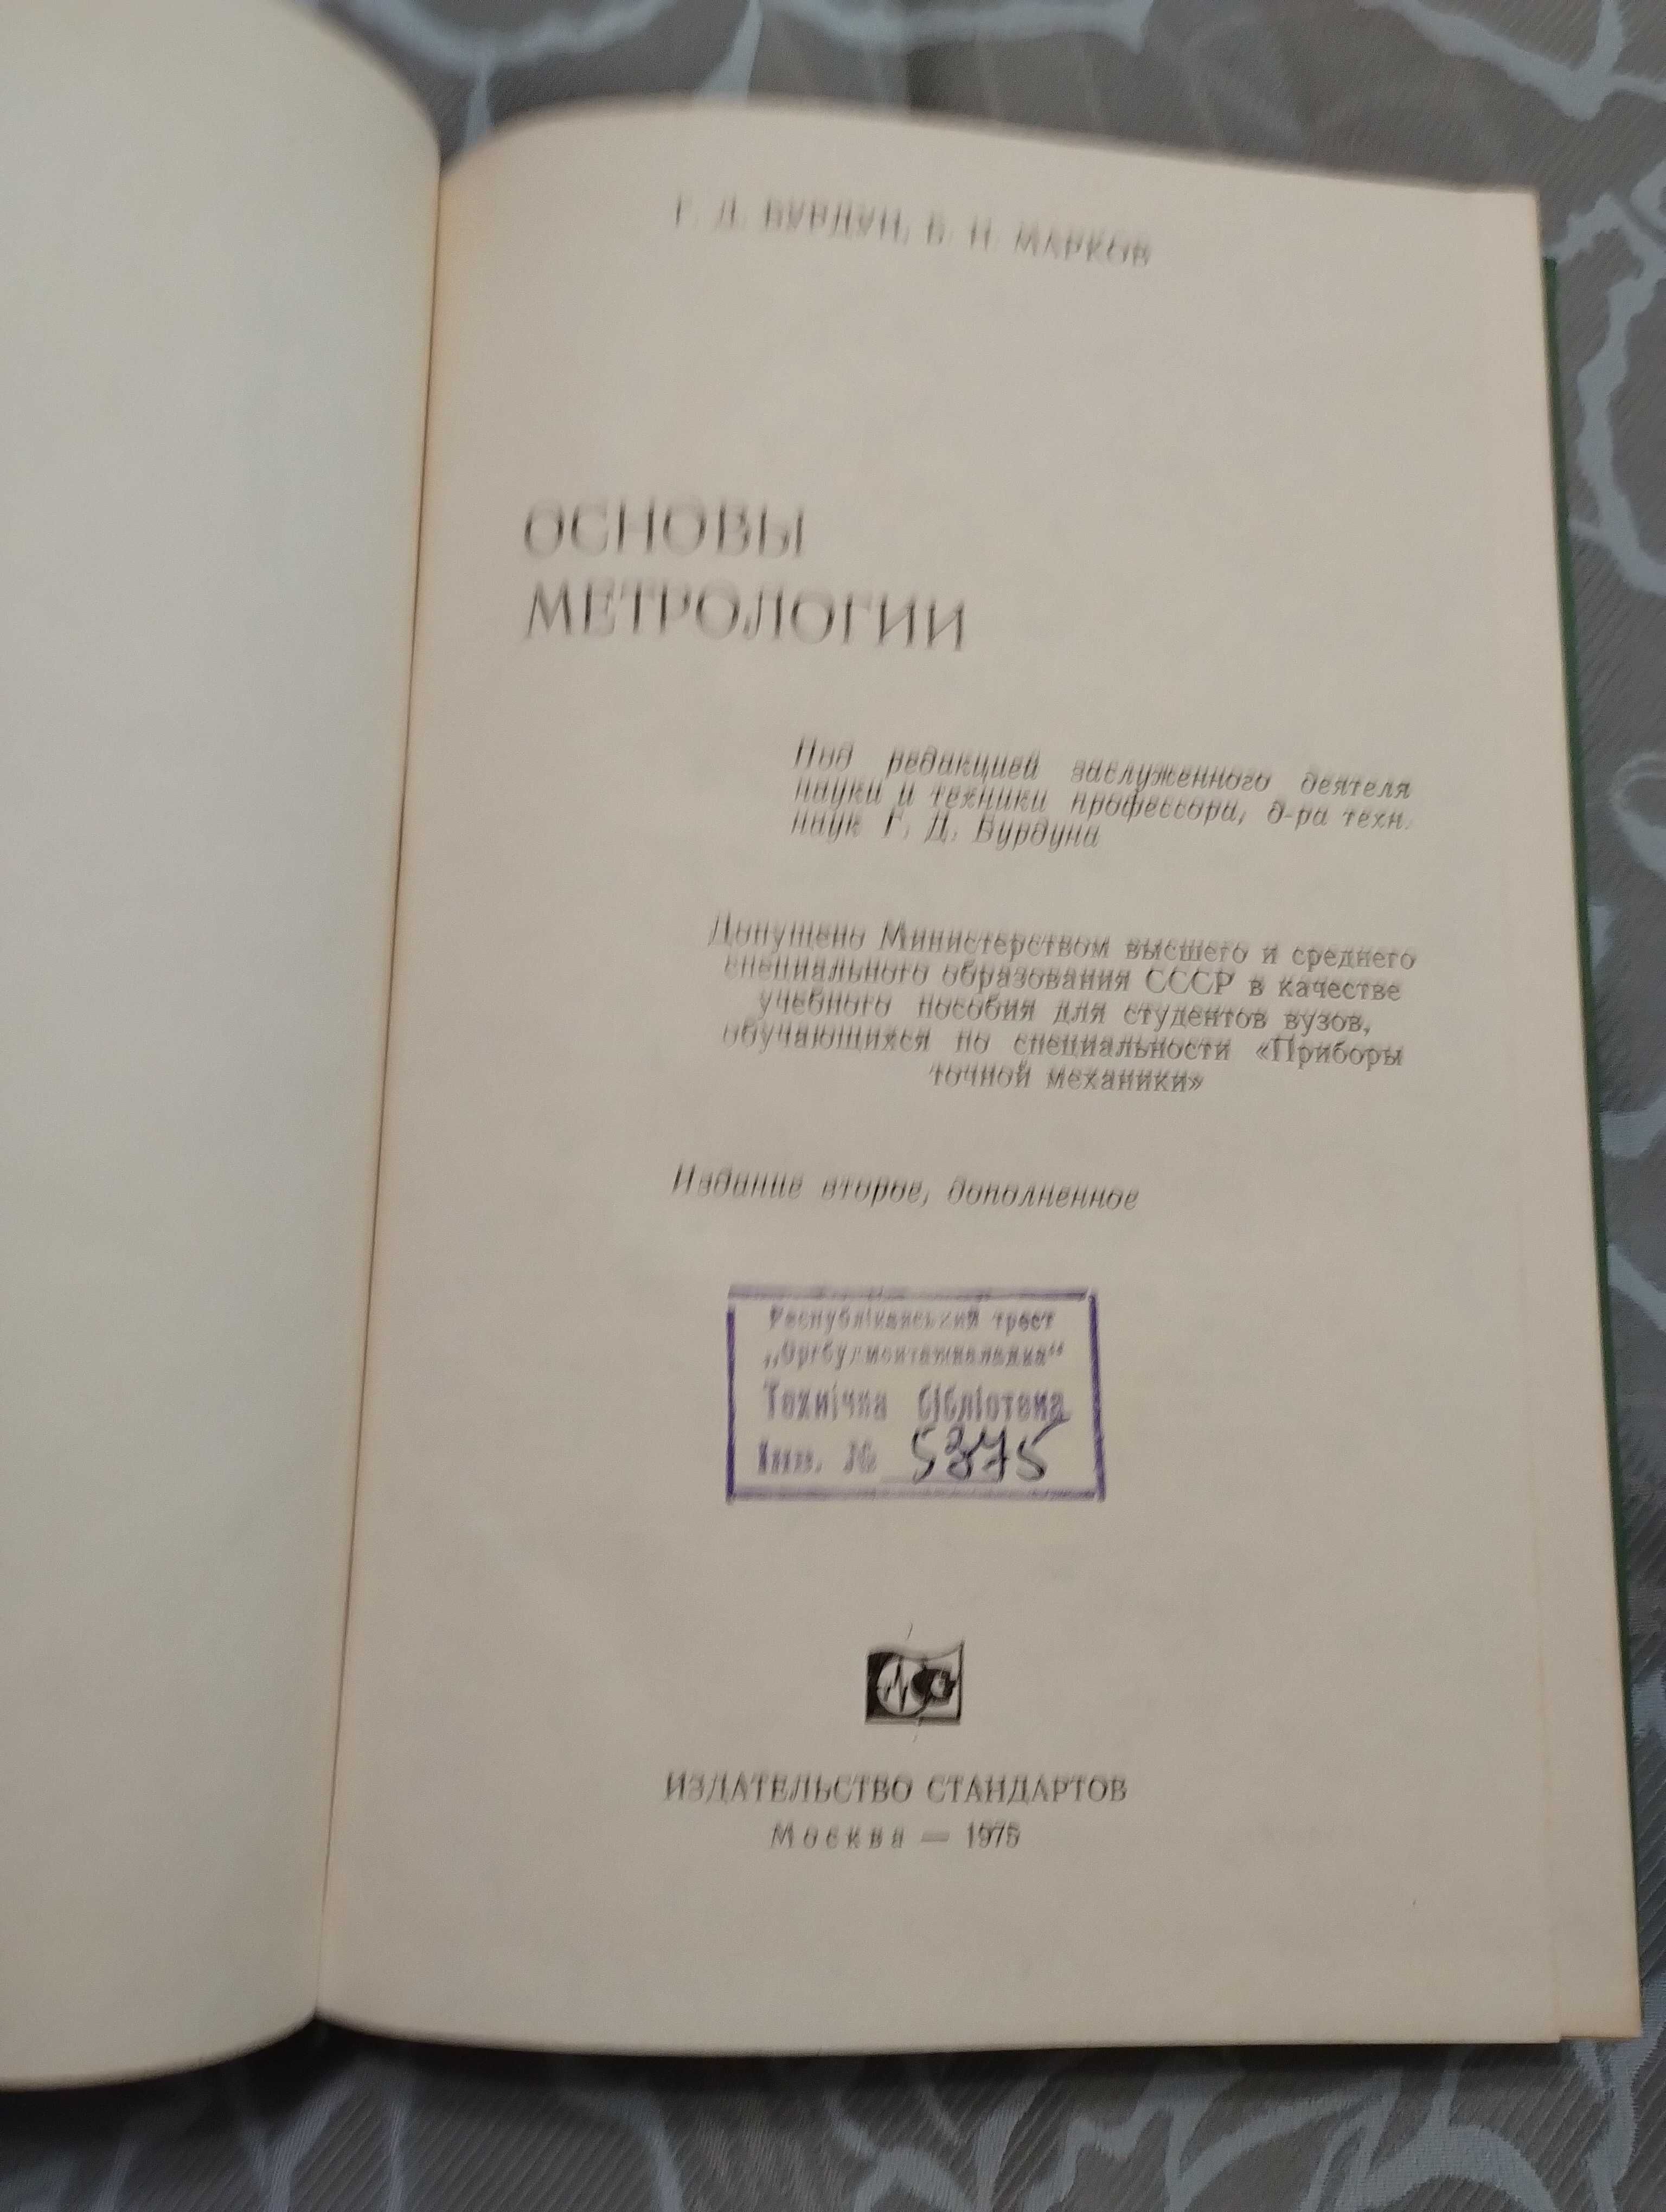 "Основы метрологии"Г.Д.Бурдун Б.Н. Марков 1975 год в хорошем состоянии